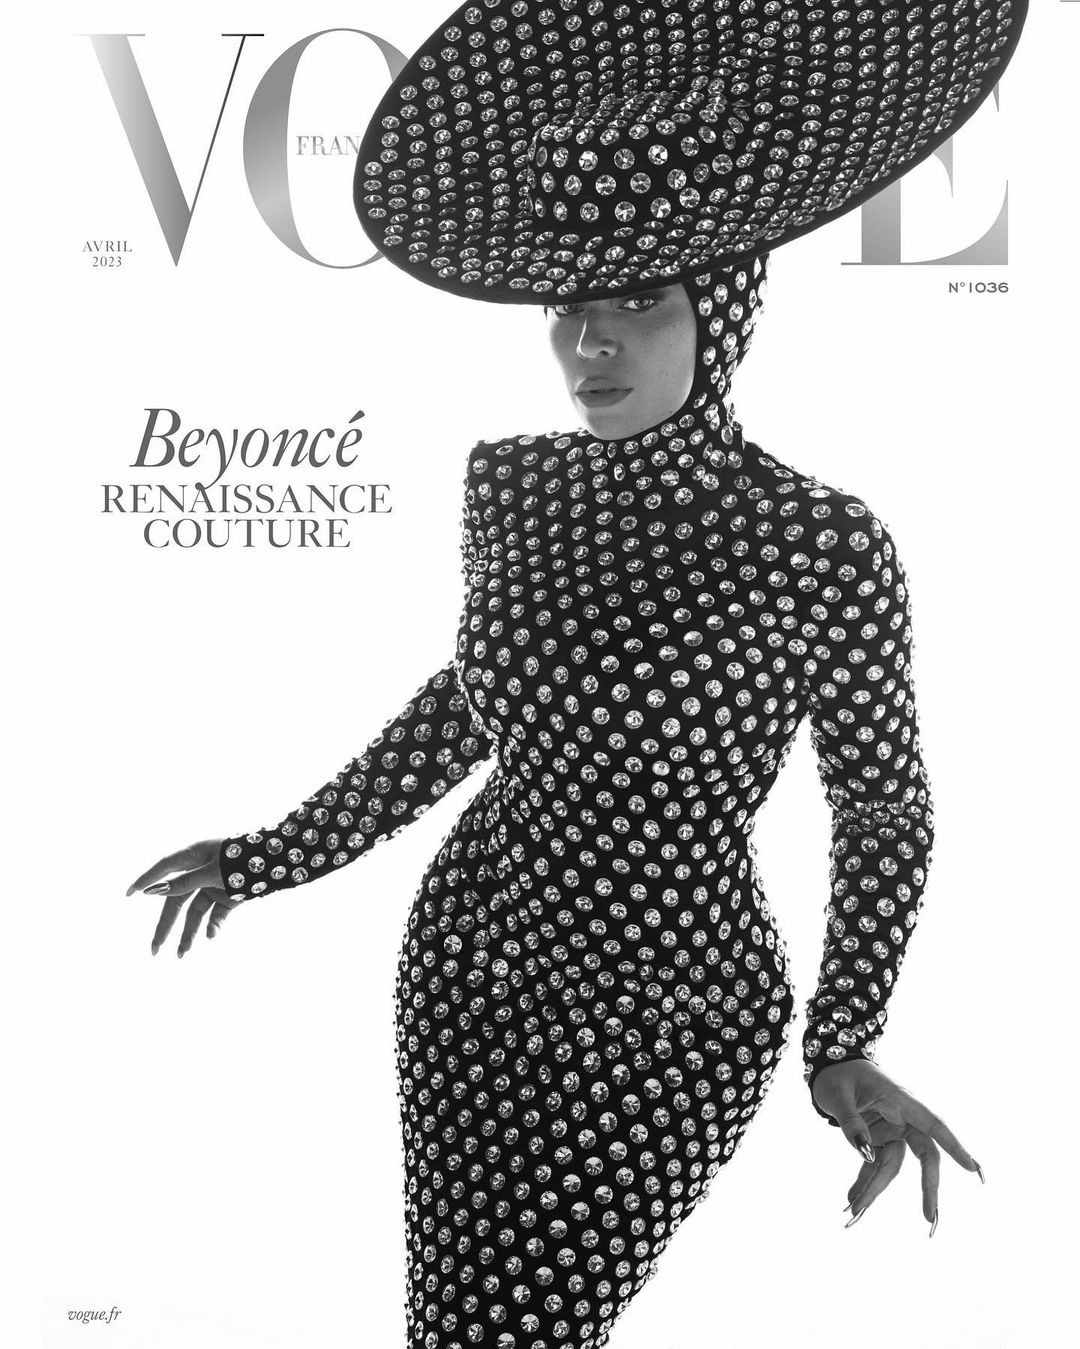 Chimène D Beyoncé Balmain Haute couture Broderie crochet plumasserie Vogue